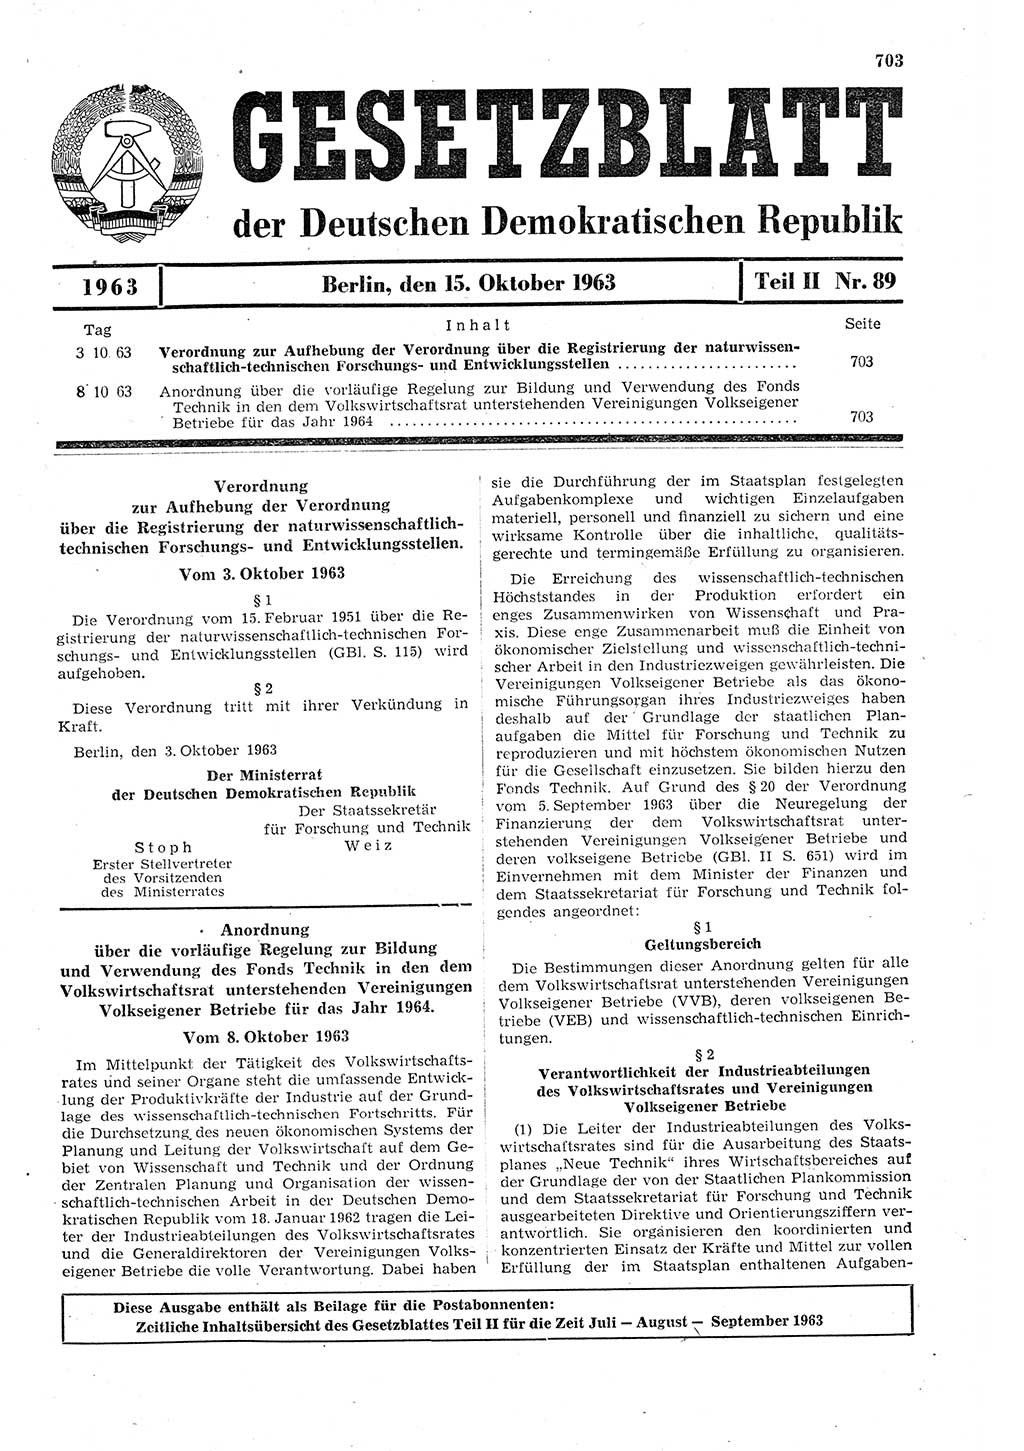 Gesetzblatt (GBl.) der Deutschen Demokratischen Republik (DDR) Teil ⅠⅠ 1963, Seite 703 (GBl. DDR ⅠⅠ 1963, S. 703)